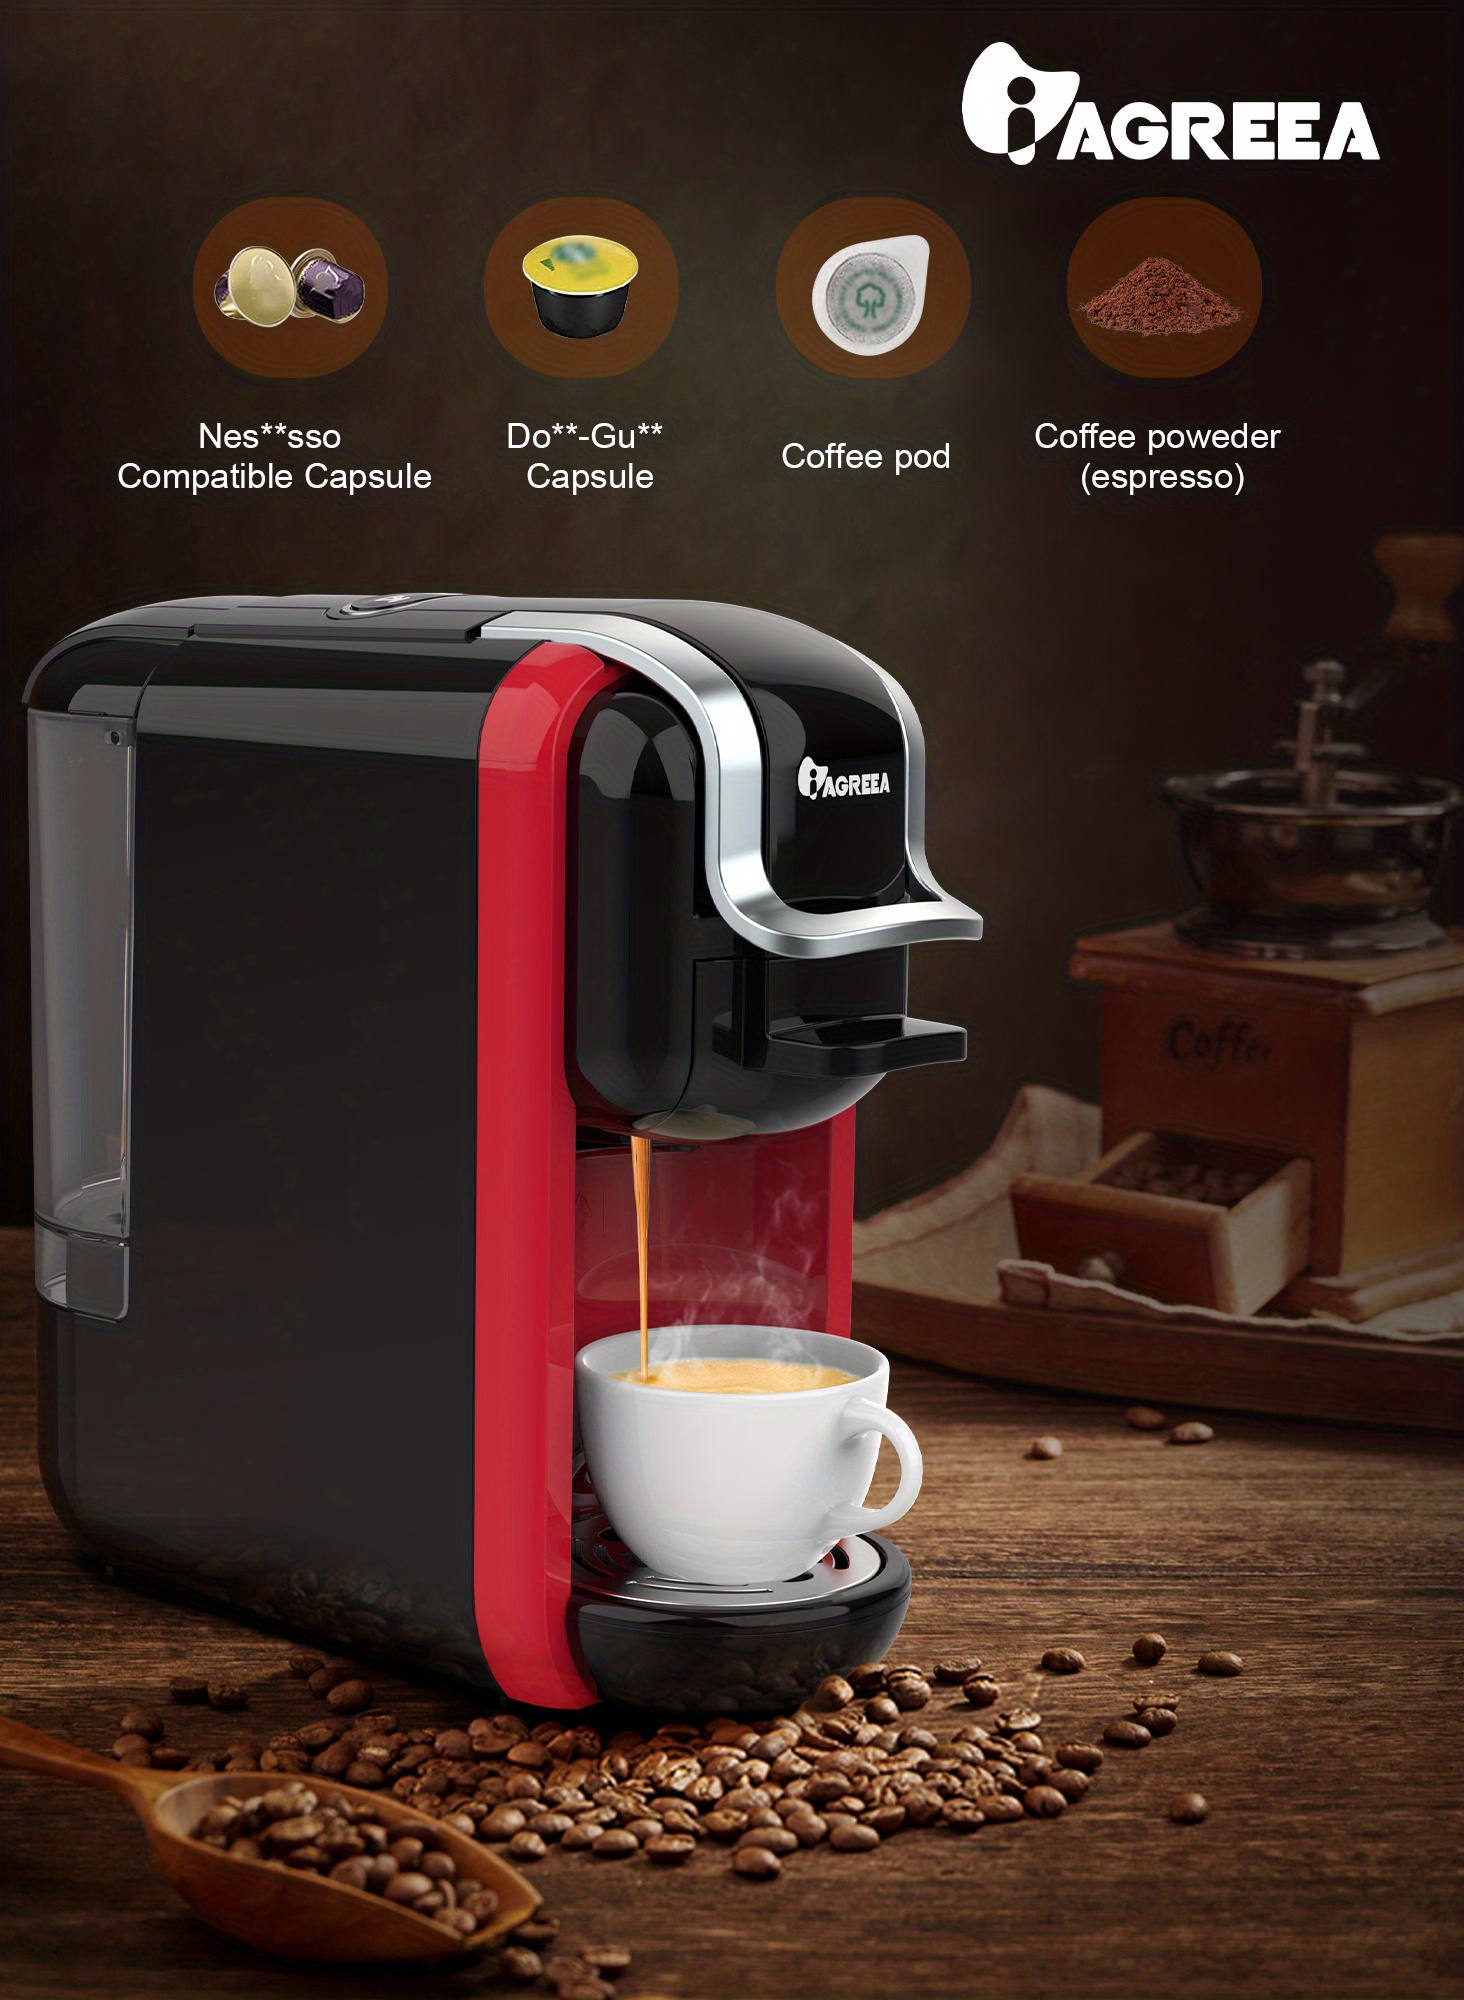 Compact Coffee Maker for Single Pods, HiBREW 5-in-1 Espresso Machine for  K-cup*/Nes* Original/DG*/ESE Pod/Espresso Powder Compatible, Cold/Hot Mode